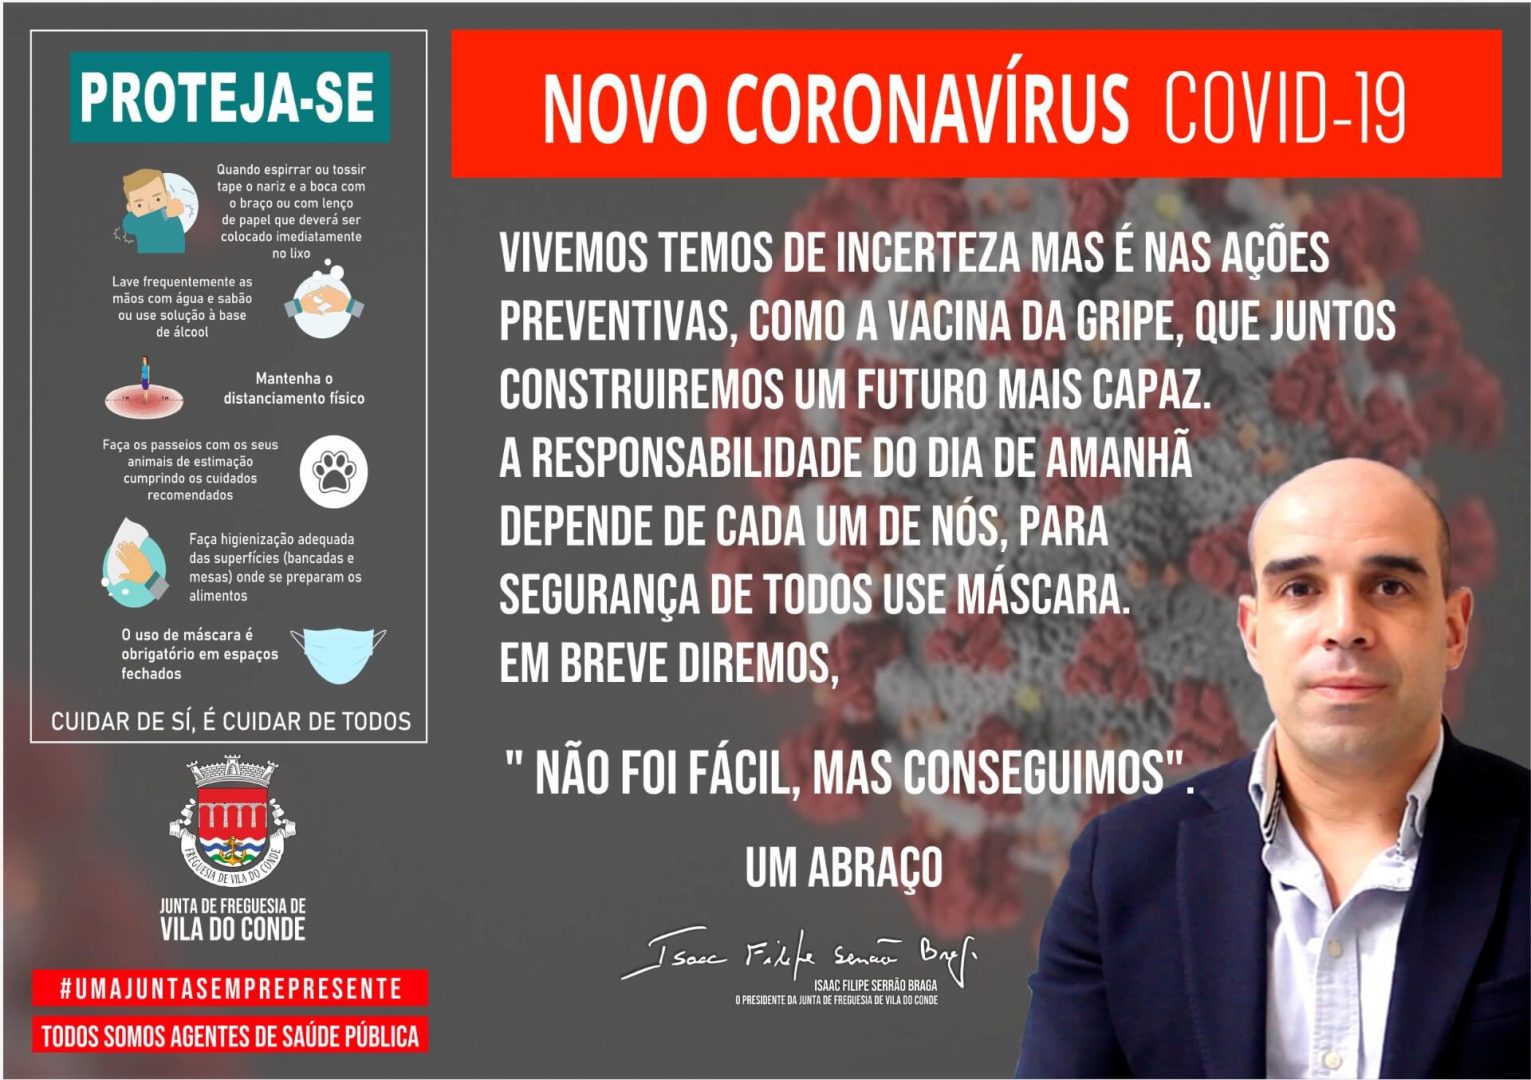 Novo Coronavírus COVID-19